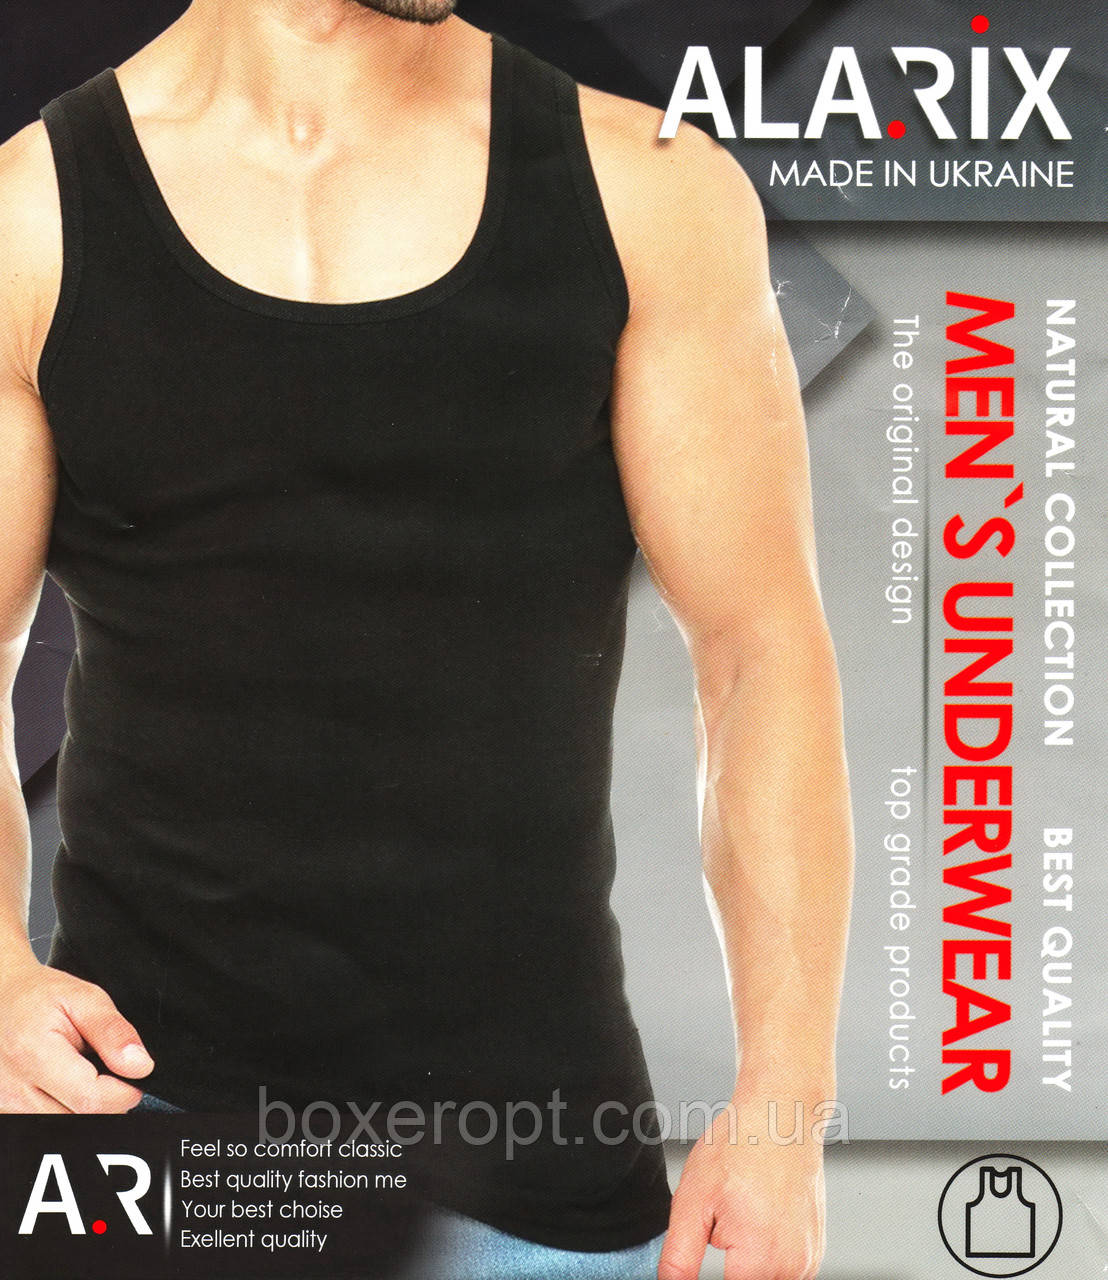 Чоловічі майки Alarix - 67.00 грн./шт. (4XL/54 розмір, чорні)